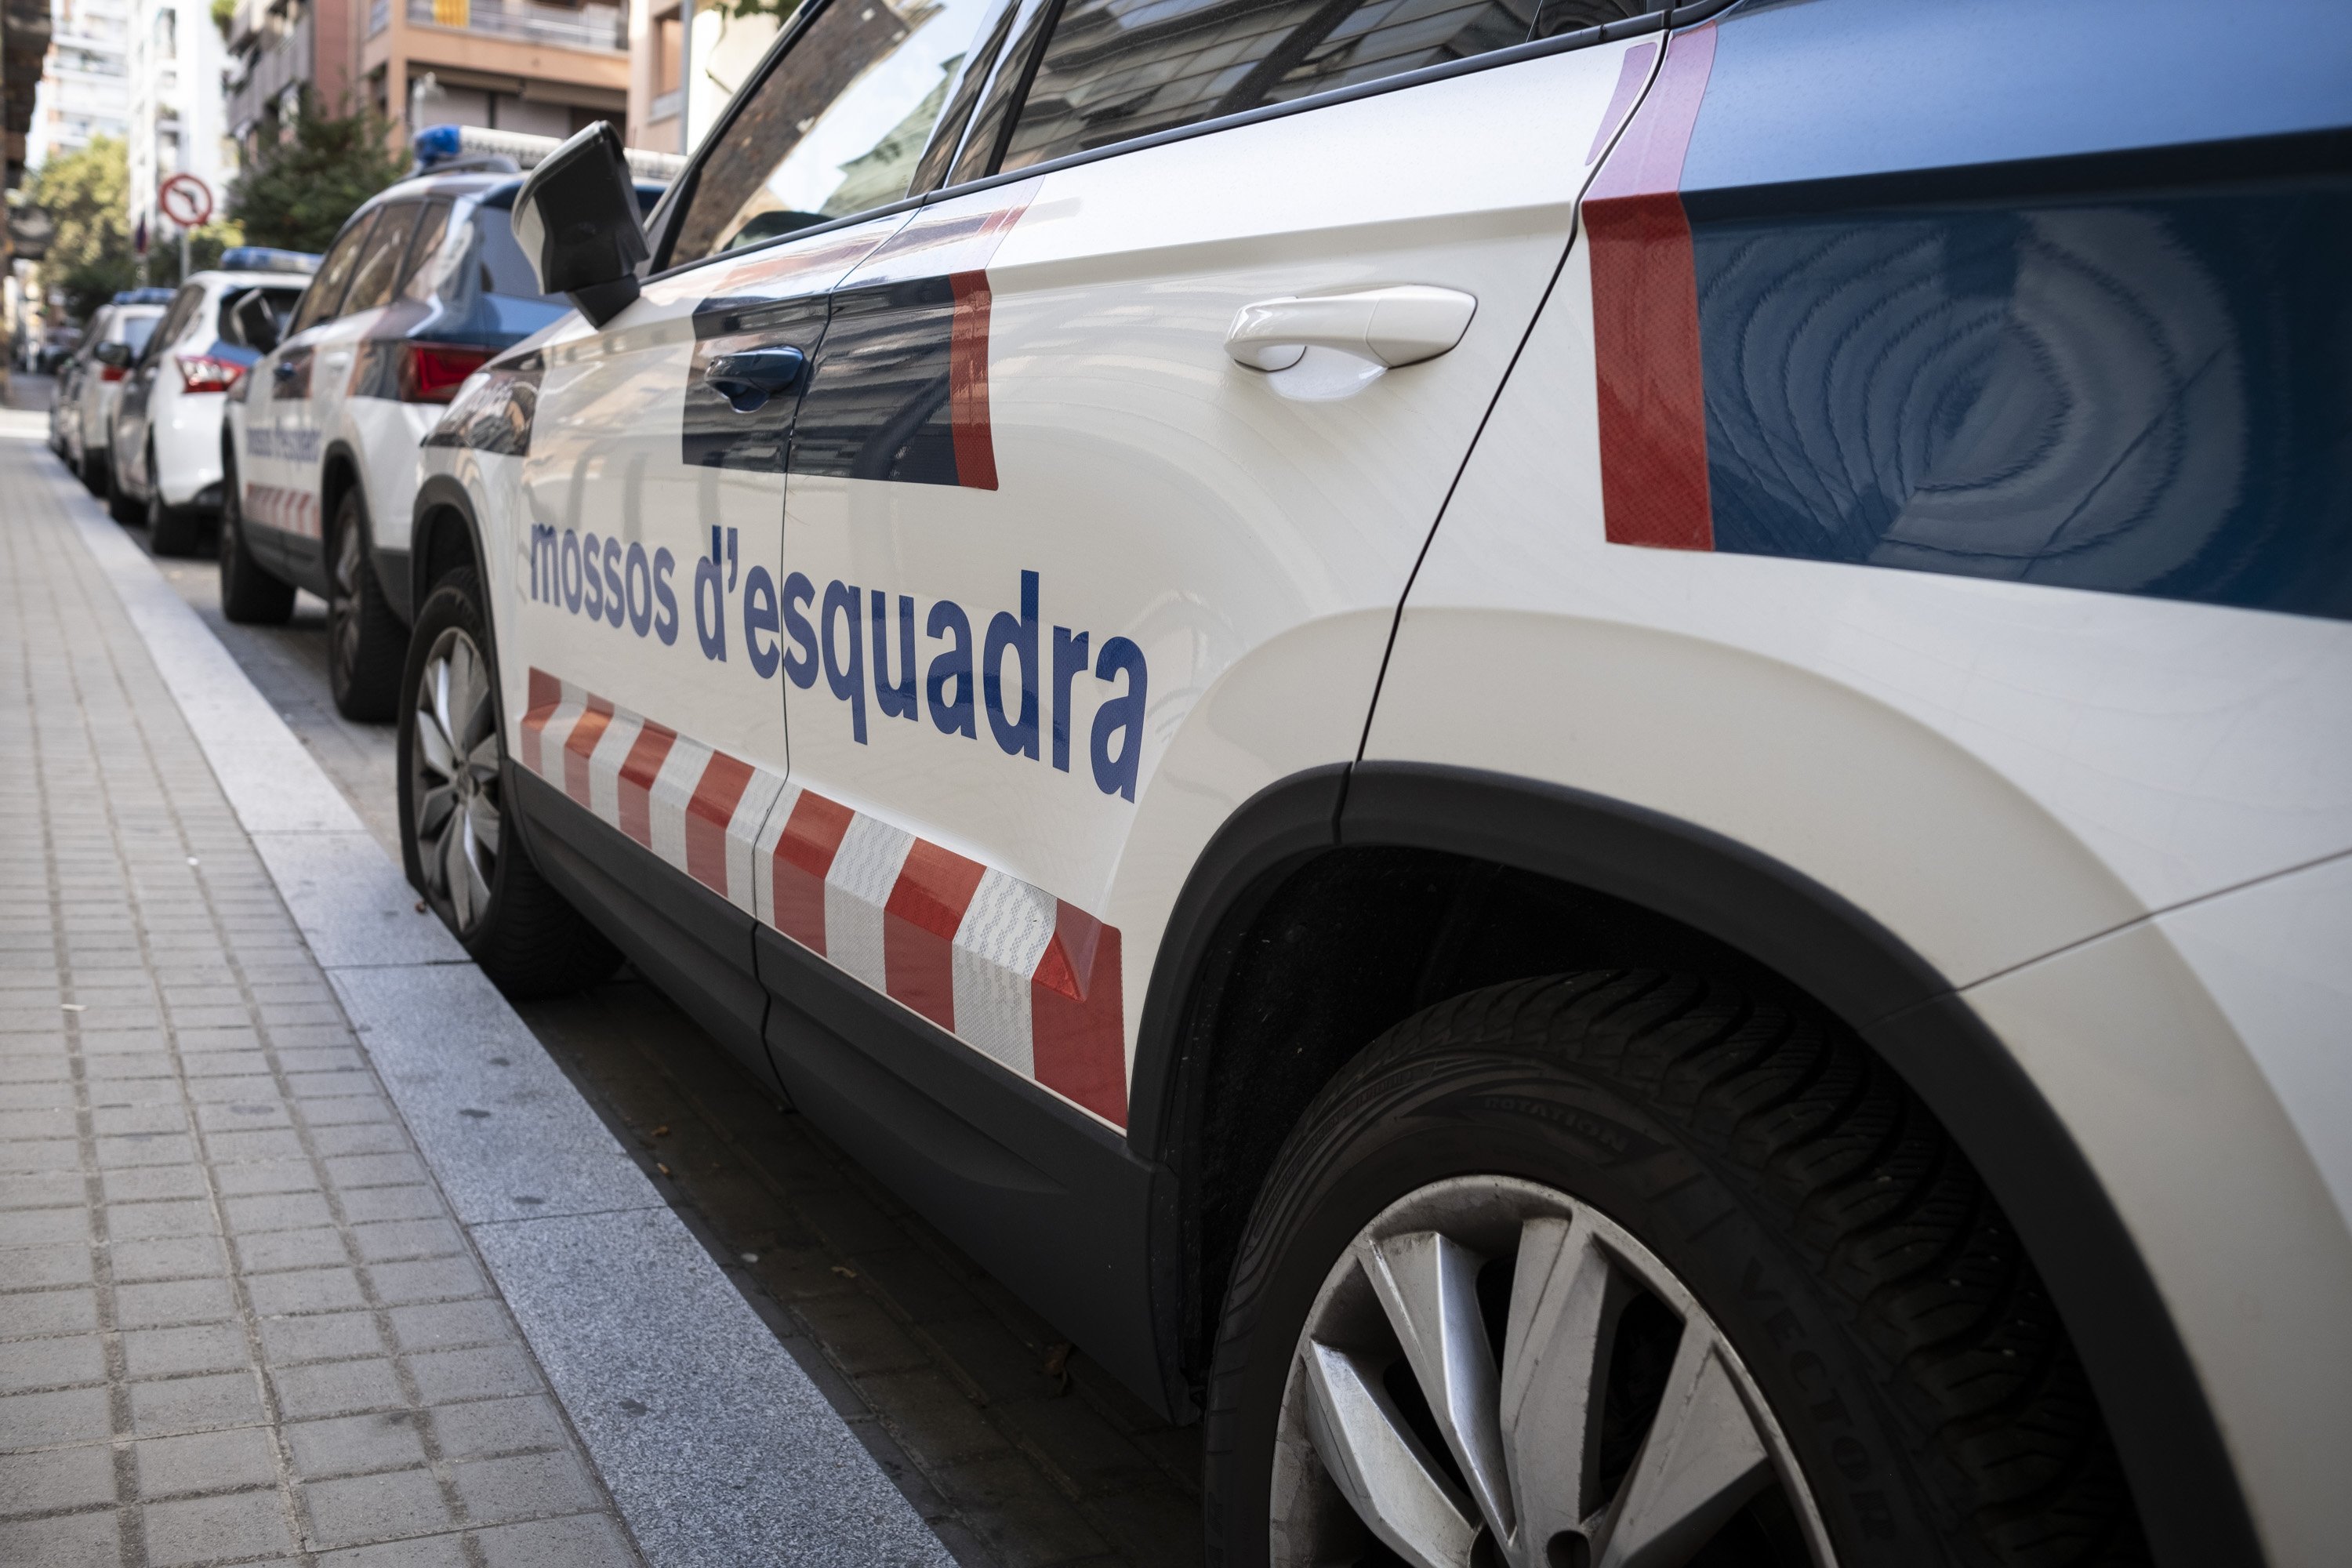 Recurs mossos d'esquadra costat cotxe / Foto: Carlos Baglietto